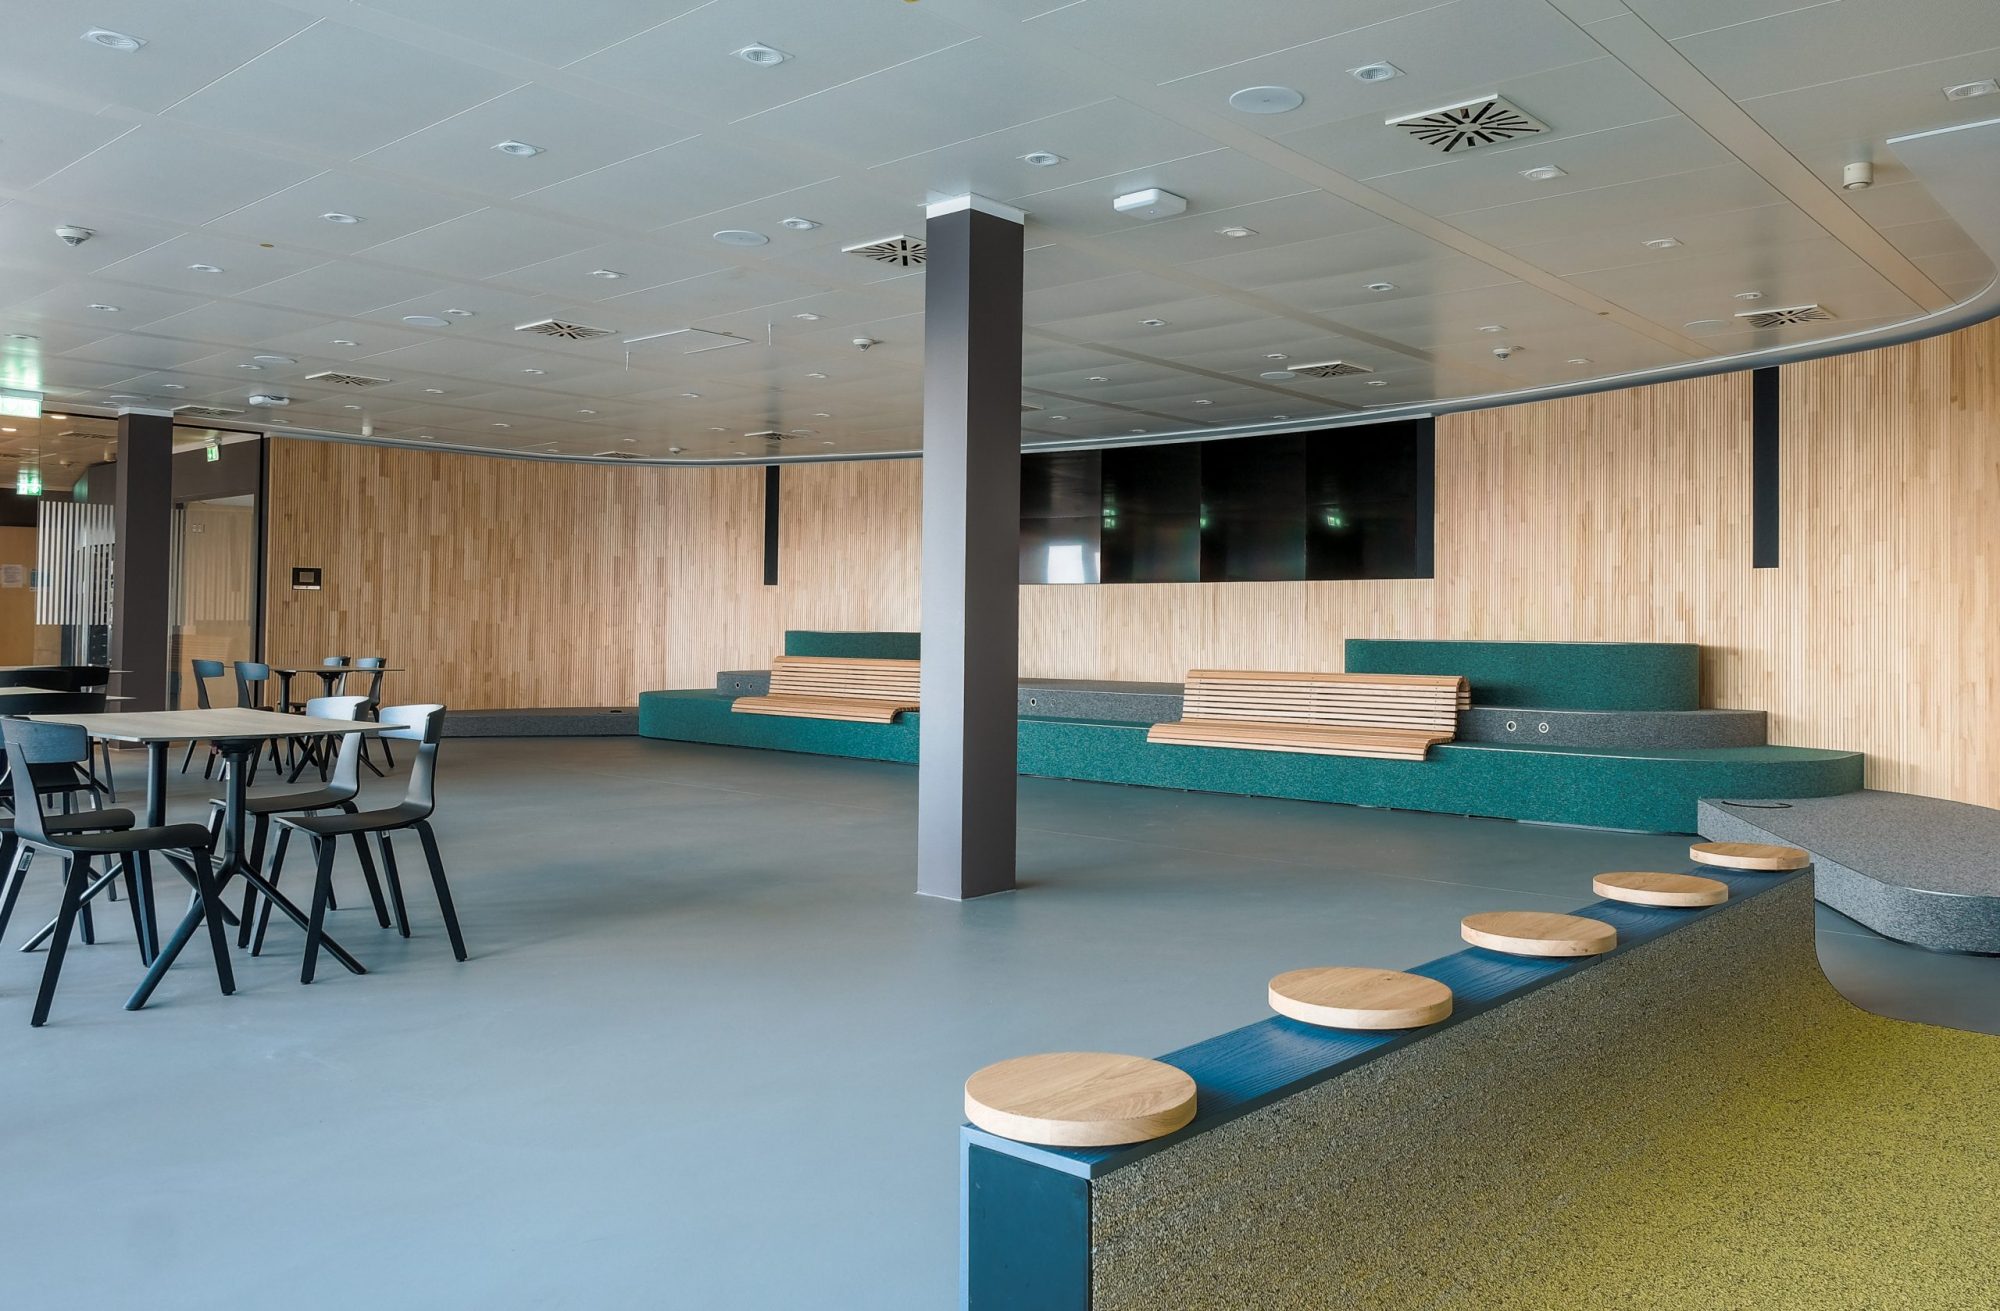 Event und Kantine Raum mit Holz Wandverkleidung, Bank und Sitzplätze für Consorsbank in Nürnberg. Office Design von Markmus Design. 